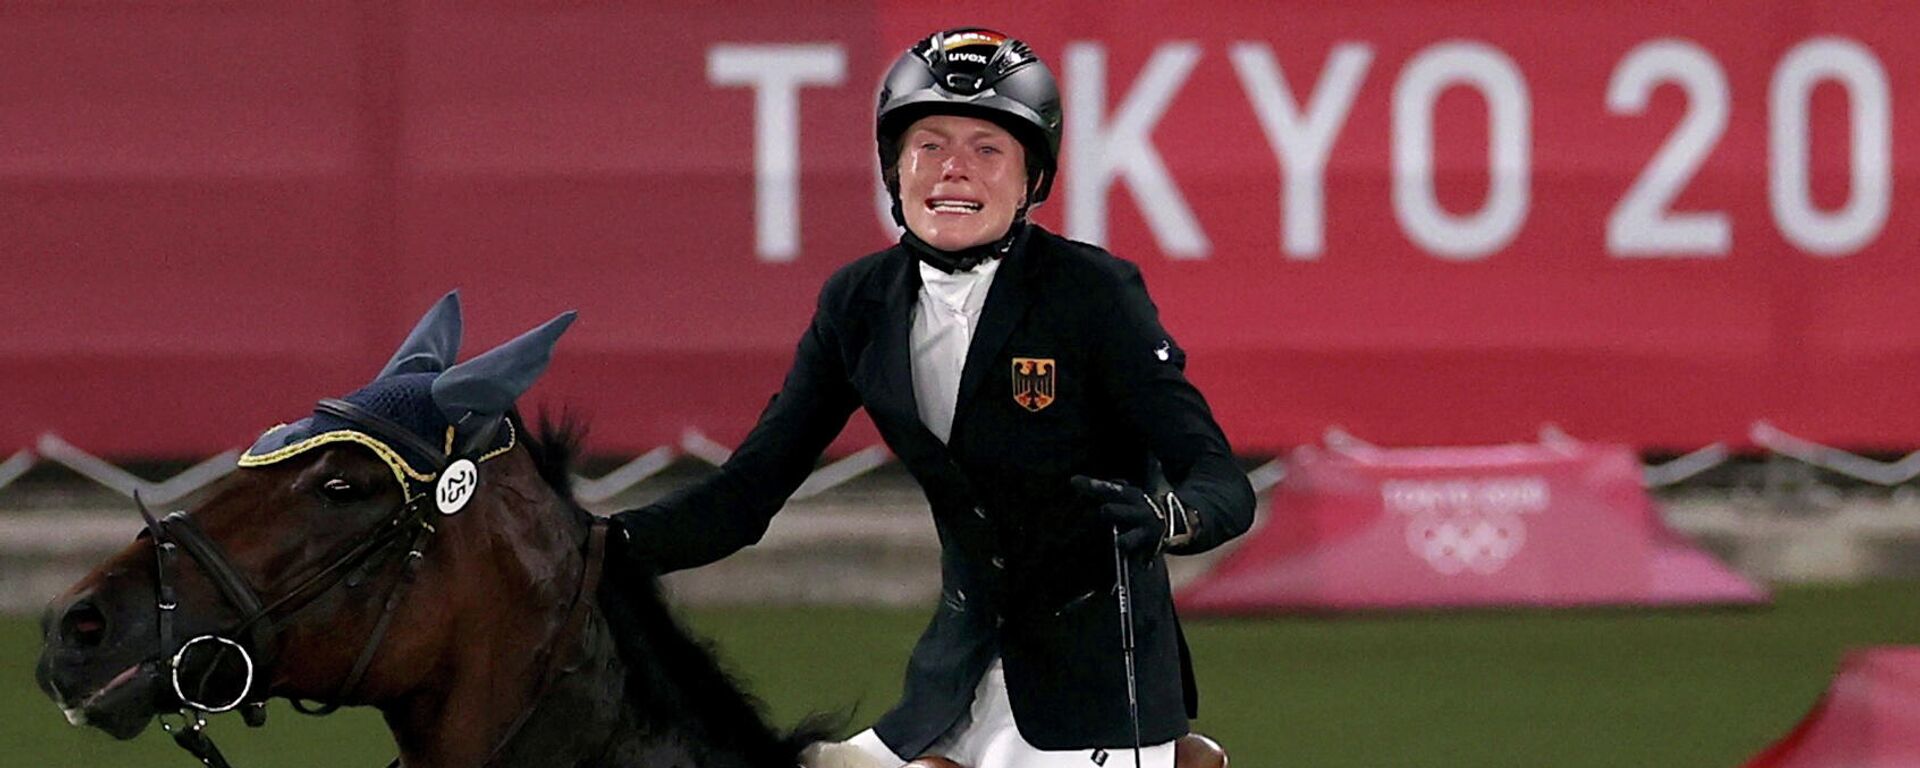 La pentatleta alemana Annika Schleu vivió su peor pesadilla en Tokio y rompió en llanto en medio de la prueba de hípica después de que su caballo, Saint Boy, se negara a saltar - Sputnik Mundo, 1920, 08.08.2021